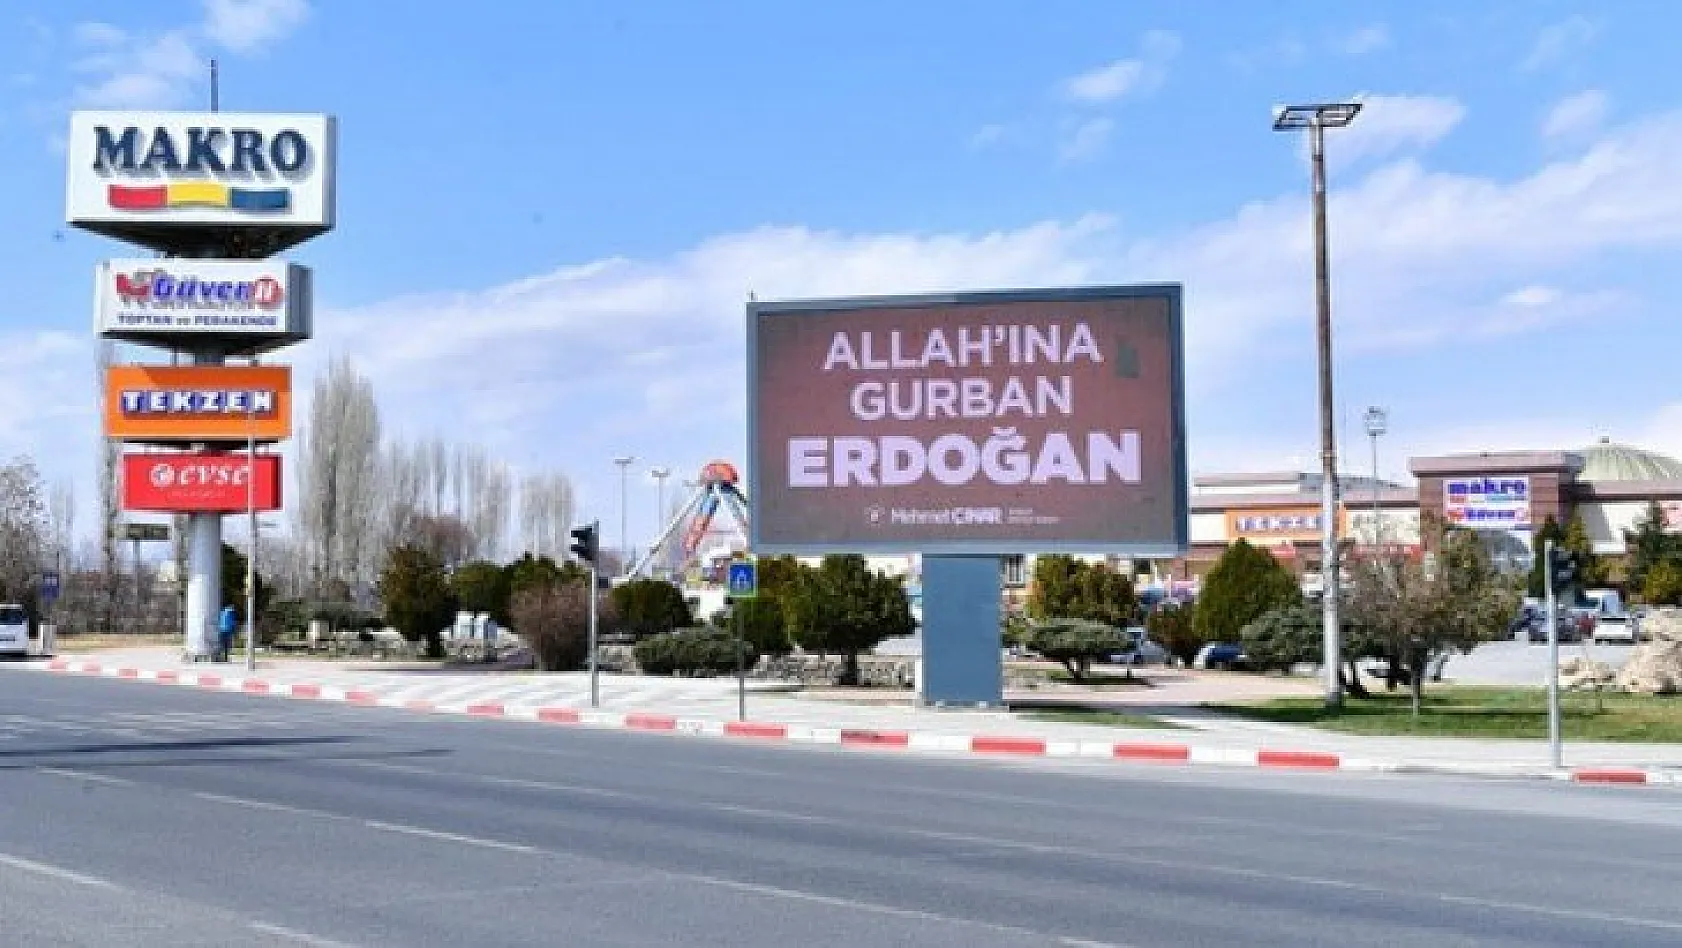 'Allah'ına gurban Erdoğan'